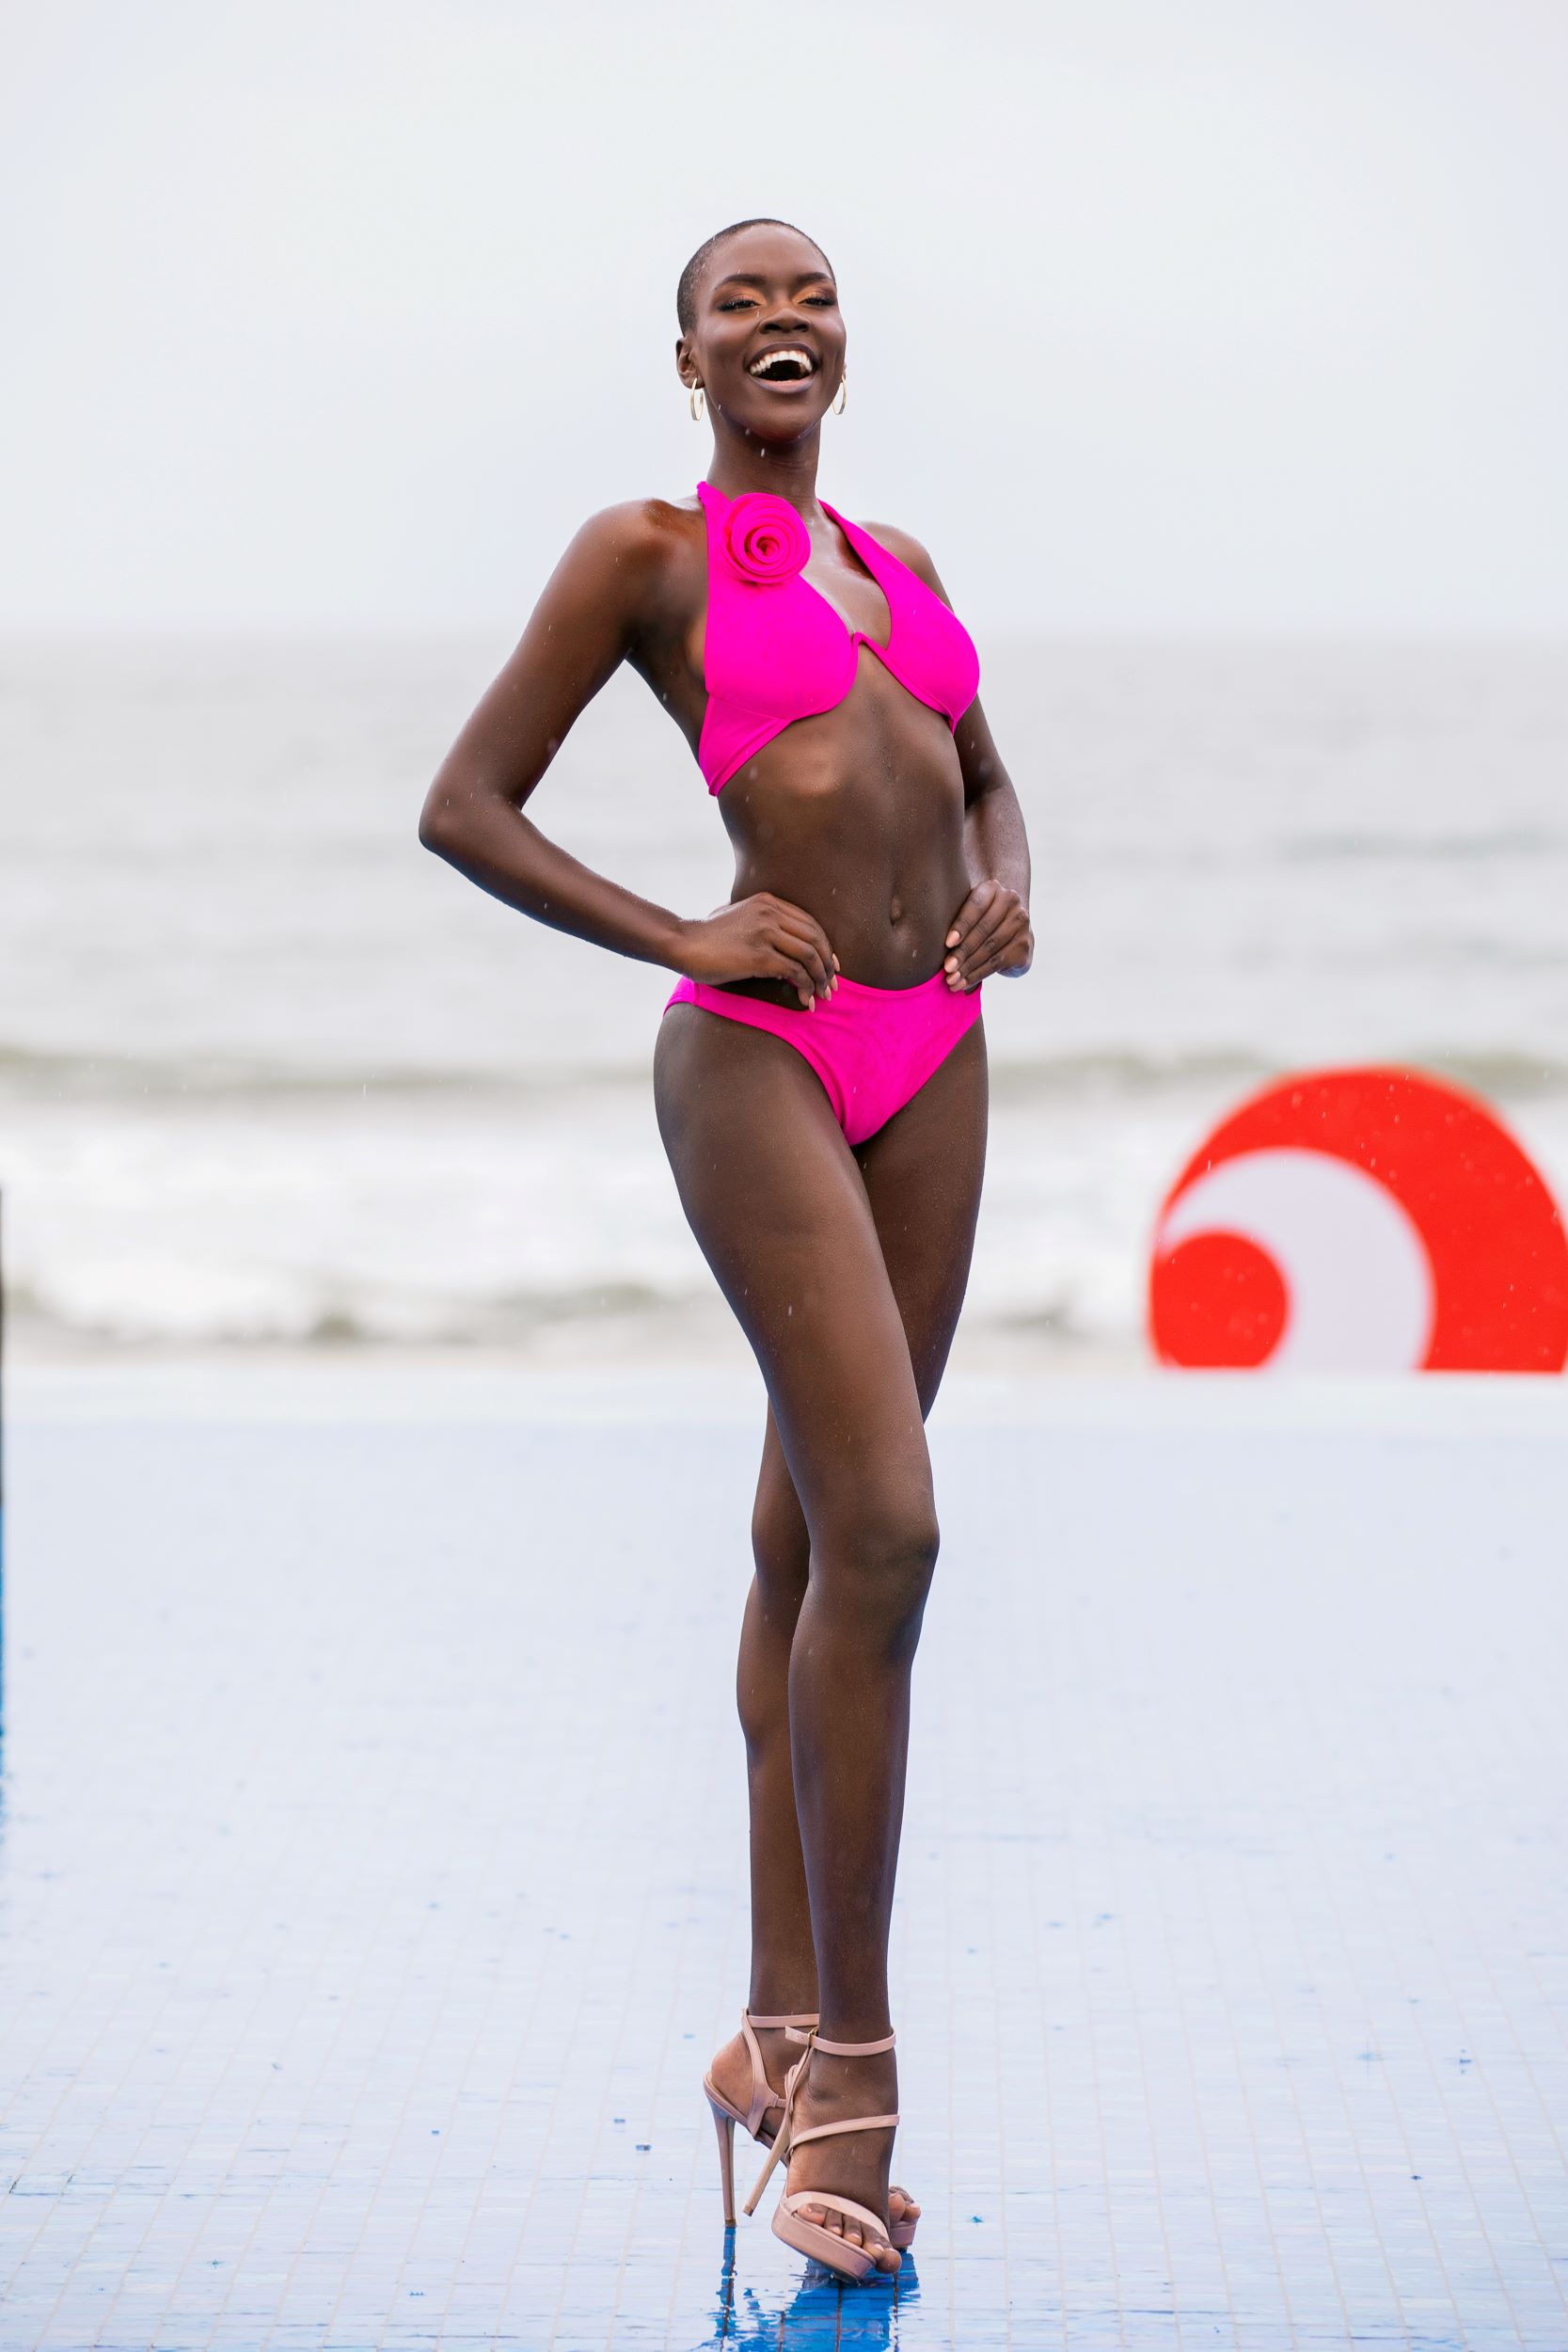 Muôn kiểu sắc thái thí sinh Hoa hậu Hòa bình quốc tế 2023 trong trang phục bikini - Ảnh 15.